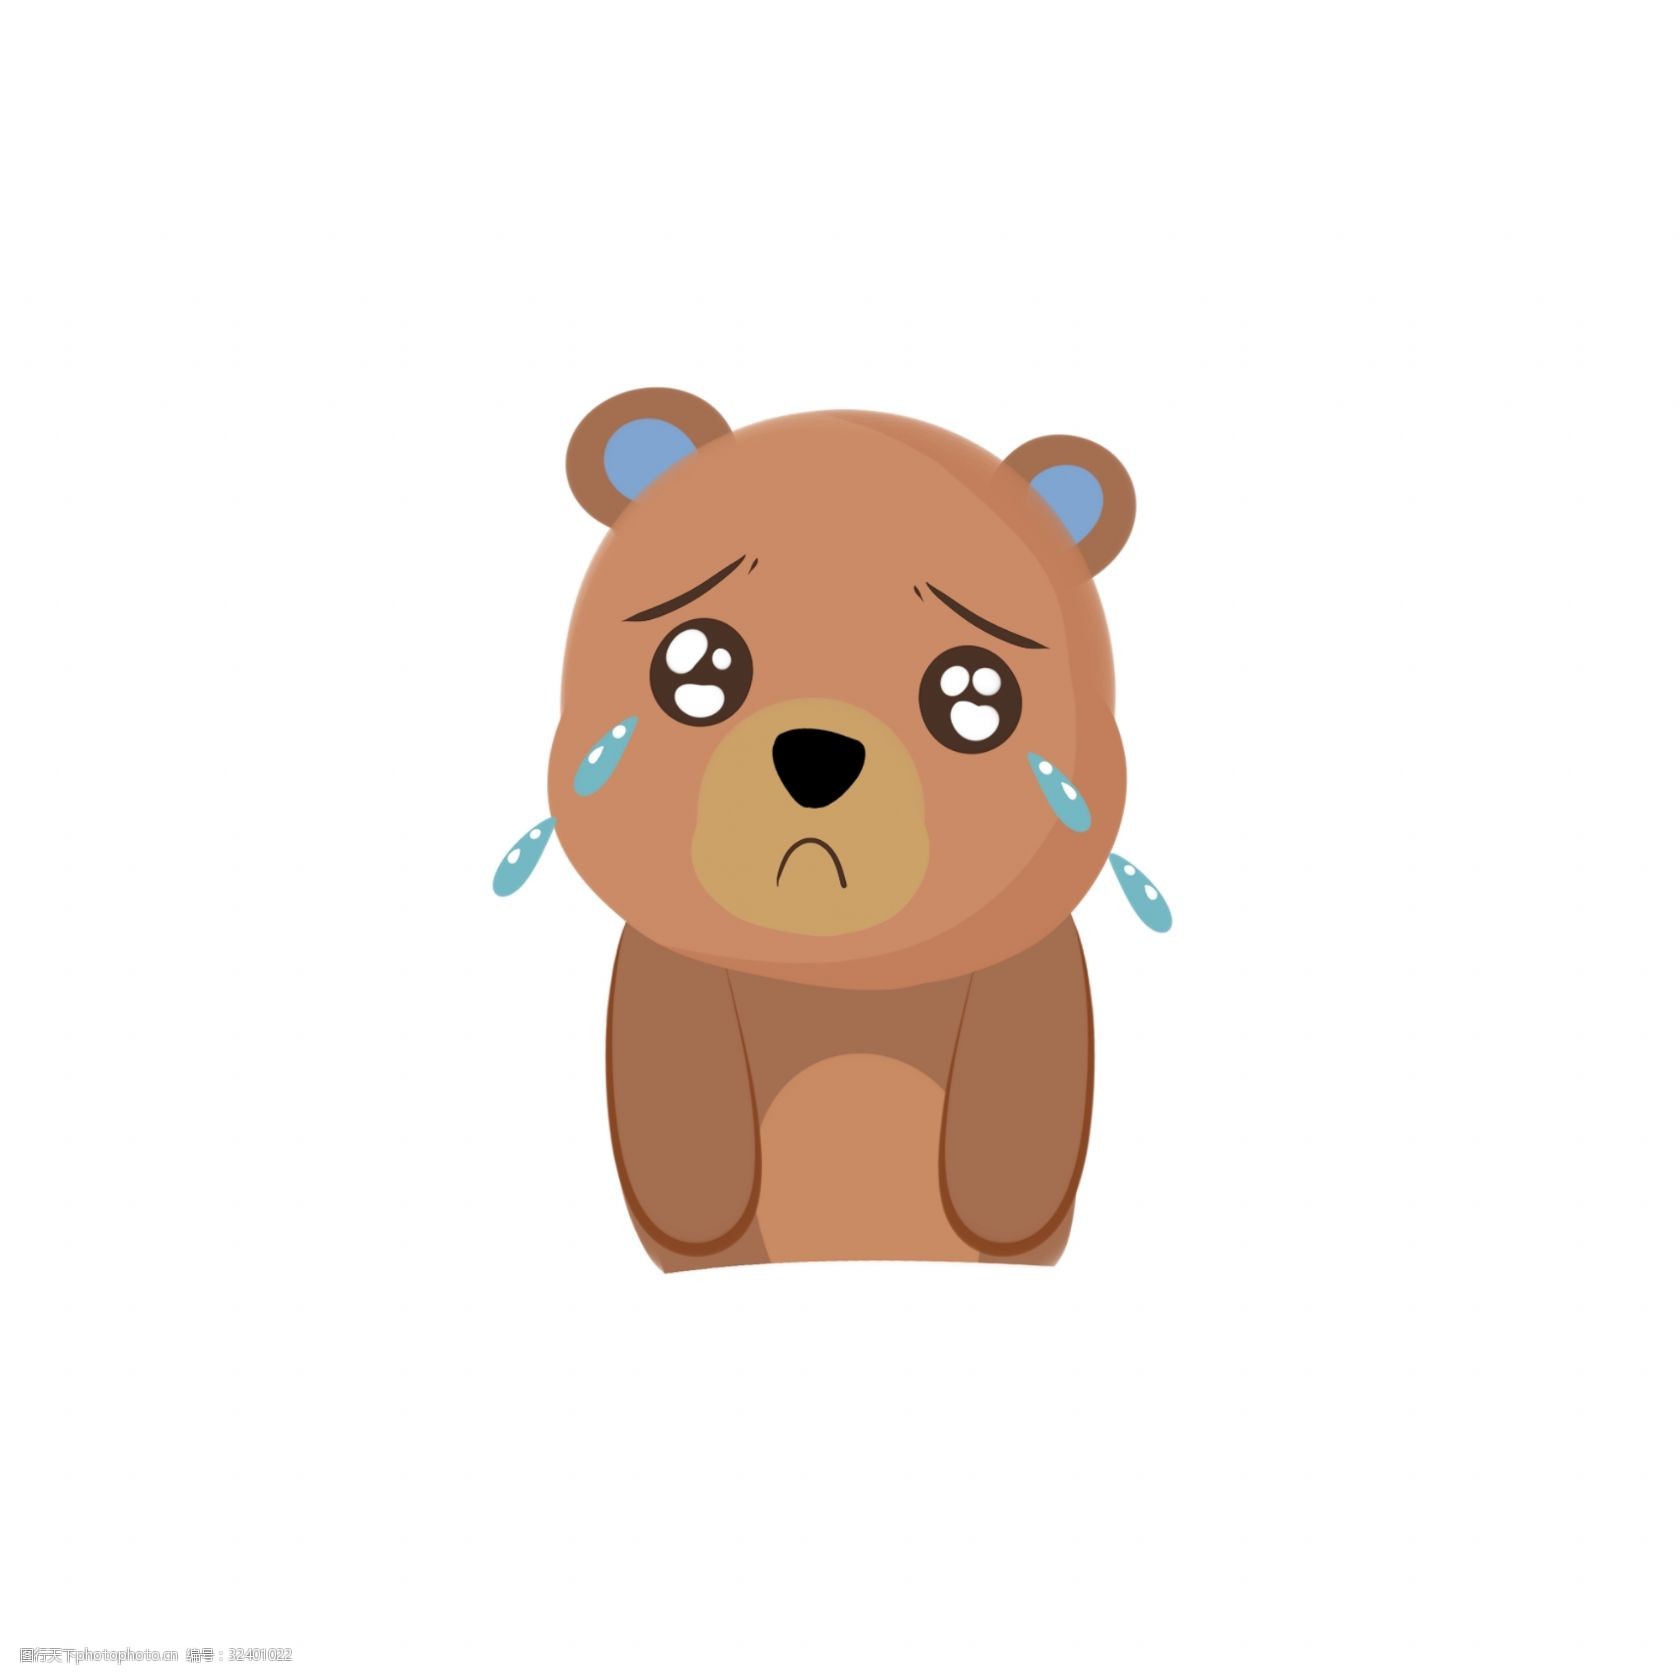 关键词:手绘哭泣的小熊免抠图 卡通手绘 水彩 动物 宠物 小熊 可爱